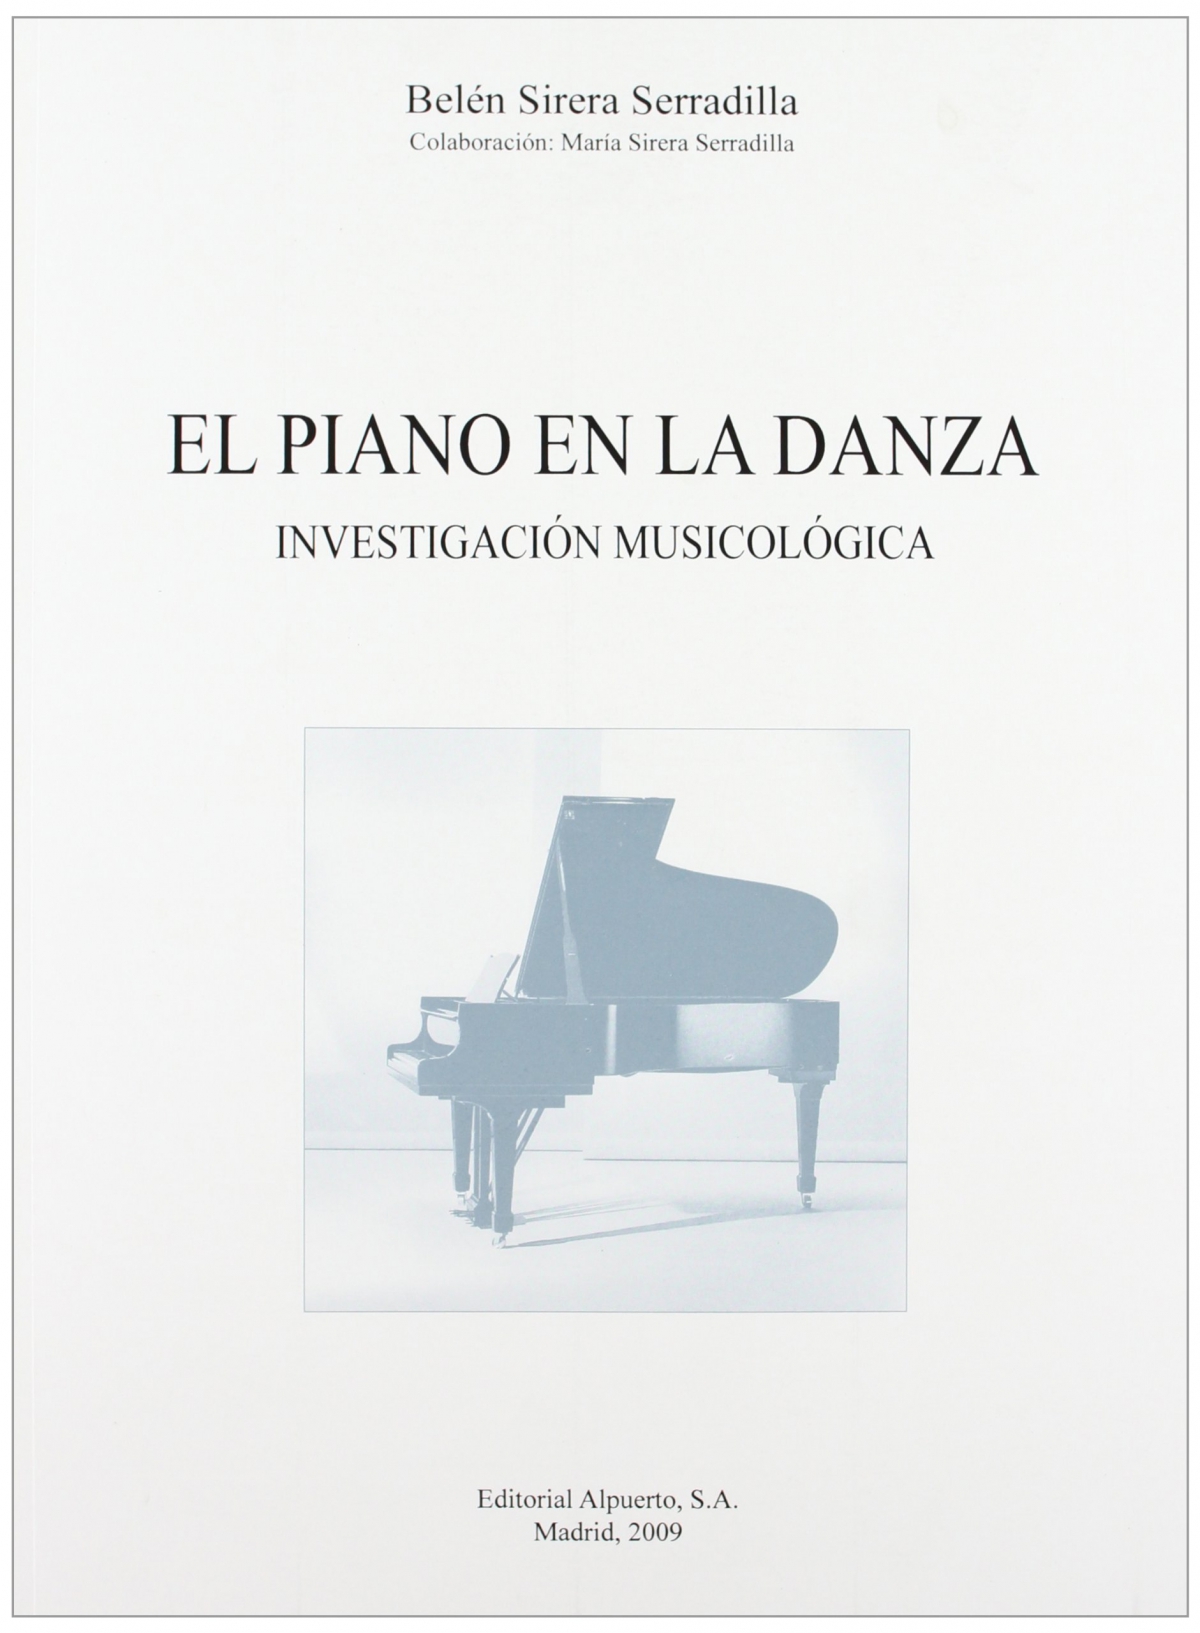 Imagen de portada del libro El piano en la danza